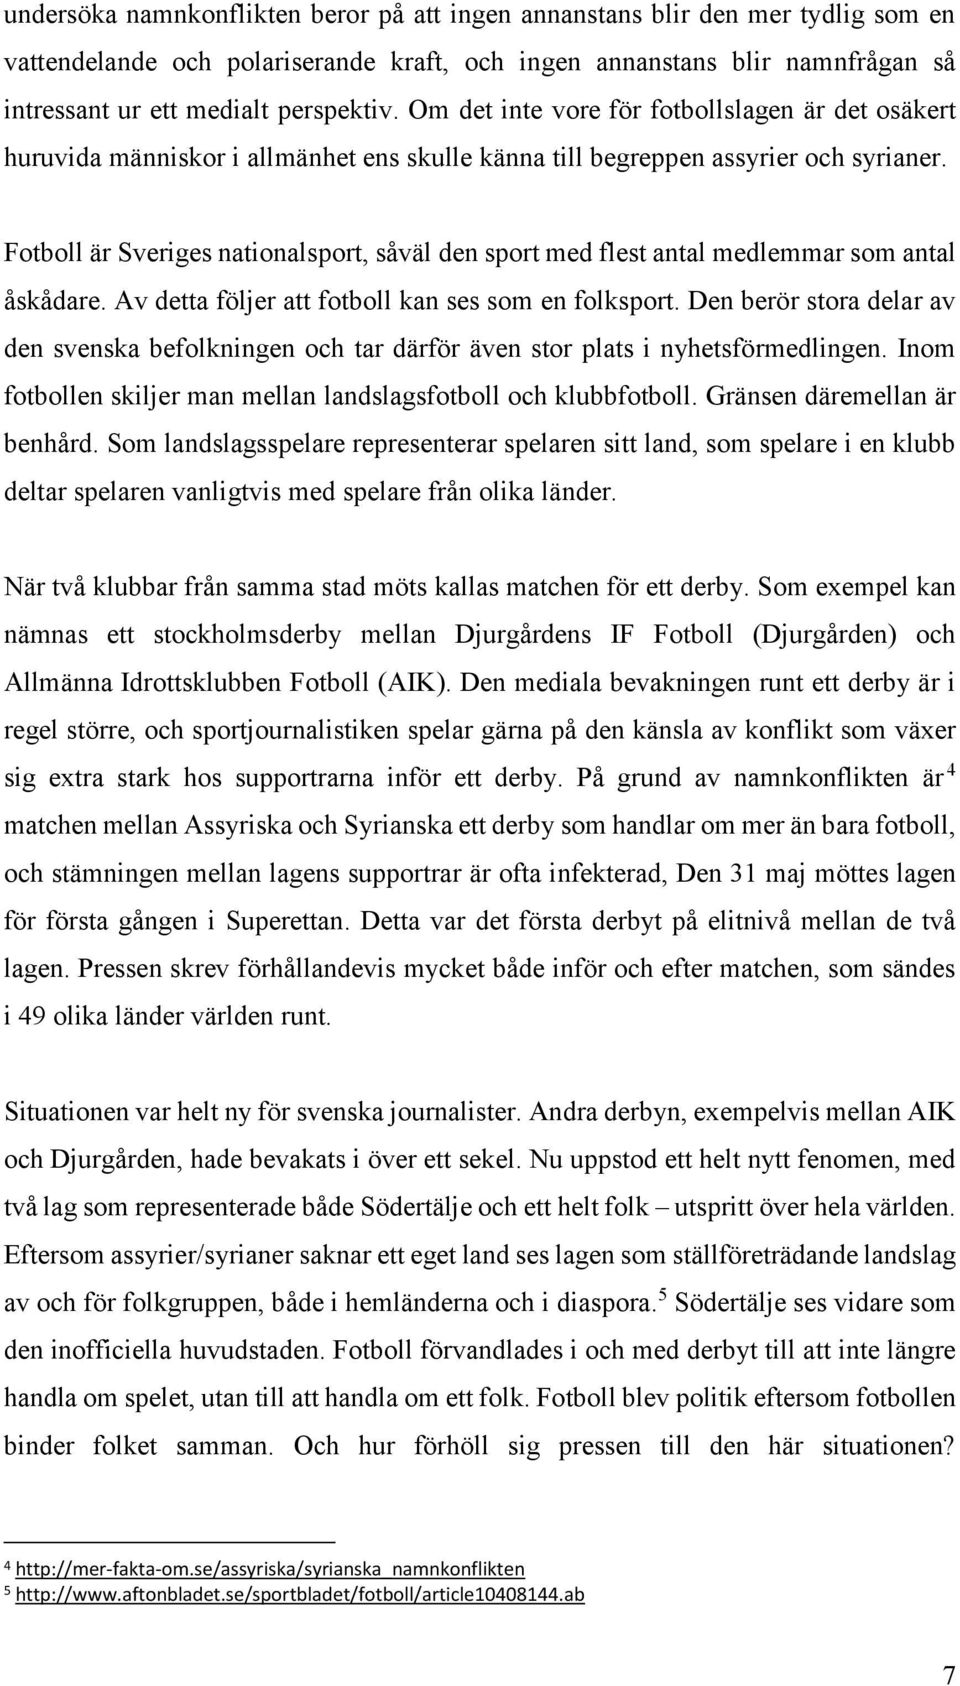 Fotboll är Sveriges nationalsport, såväl den sport med flest antal medlemmar som antal åskådare. Av detta följer att fotboll kan ses som en folksport.